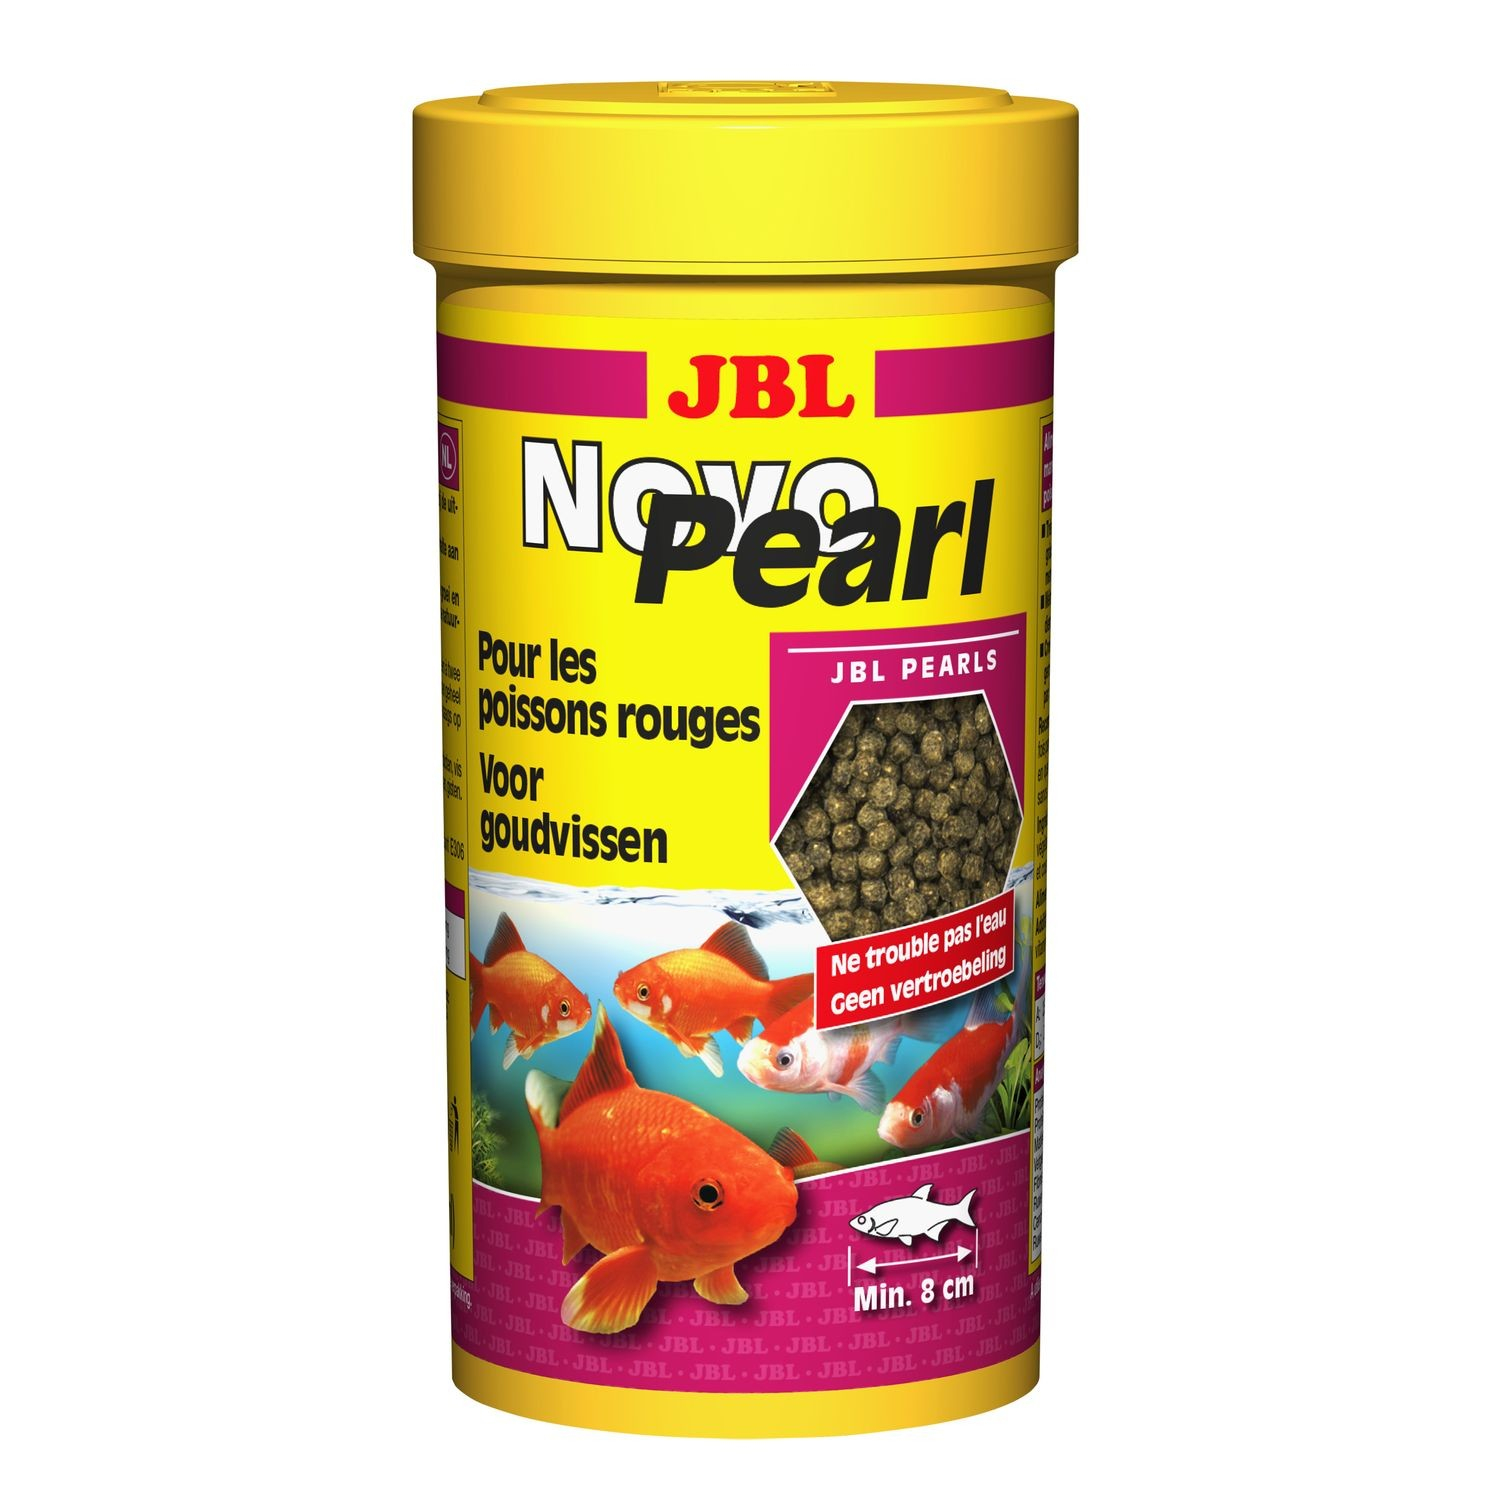 JBL NovoPearl Perlen für Goldfische und Segel aus China